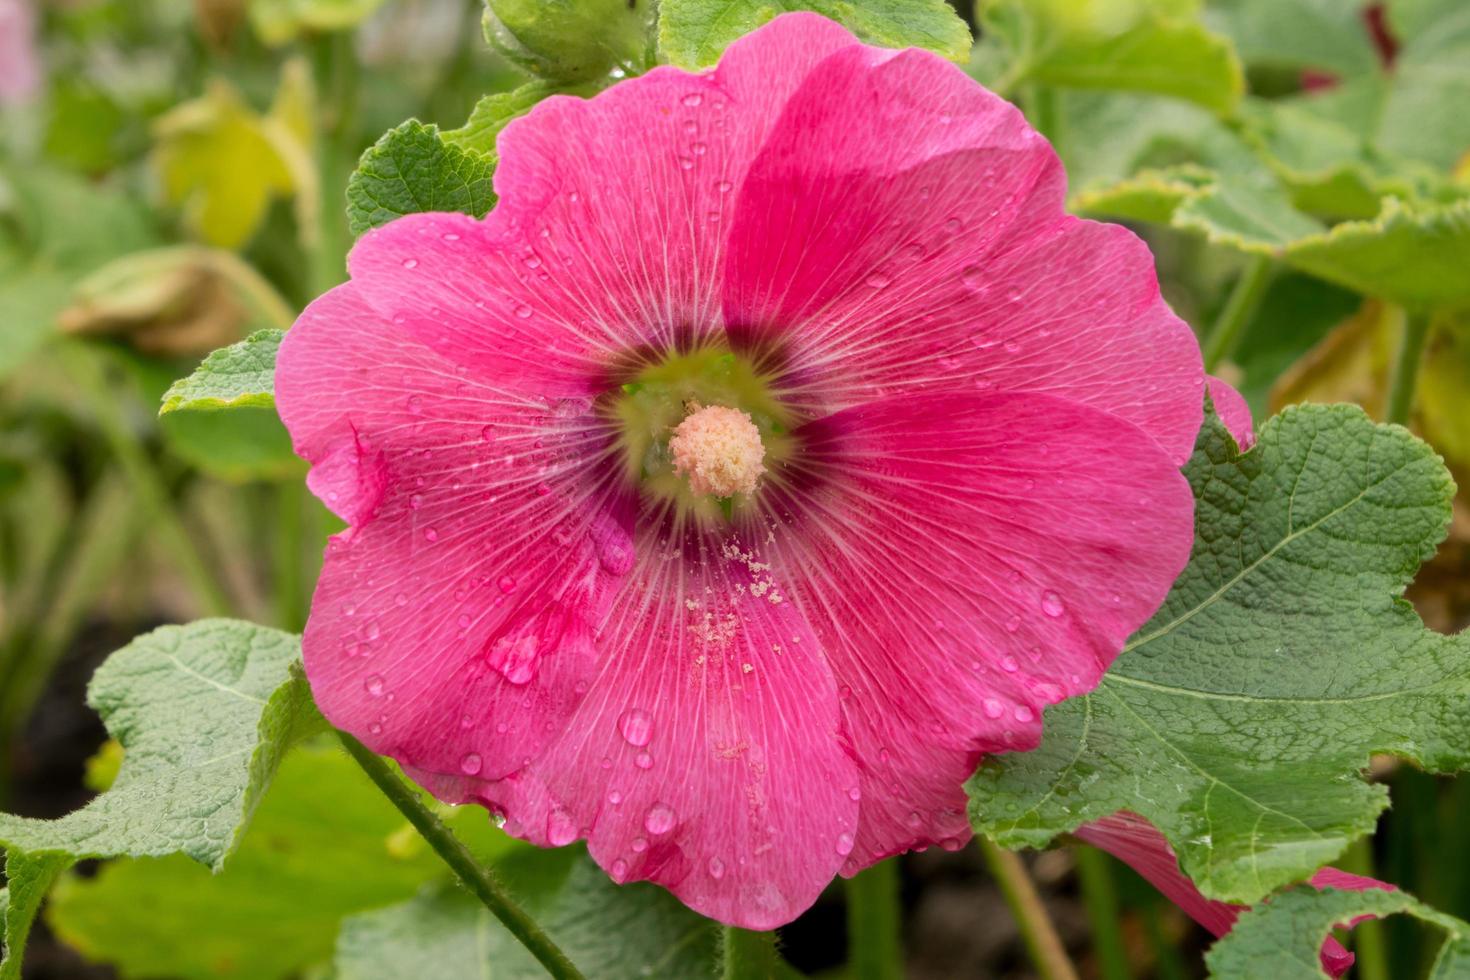 Pink hollyhock flower in garden photo